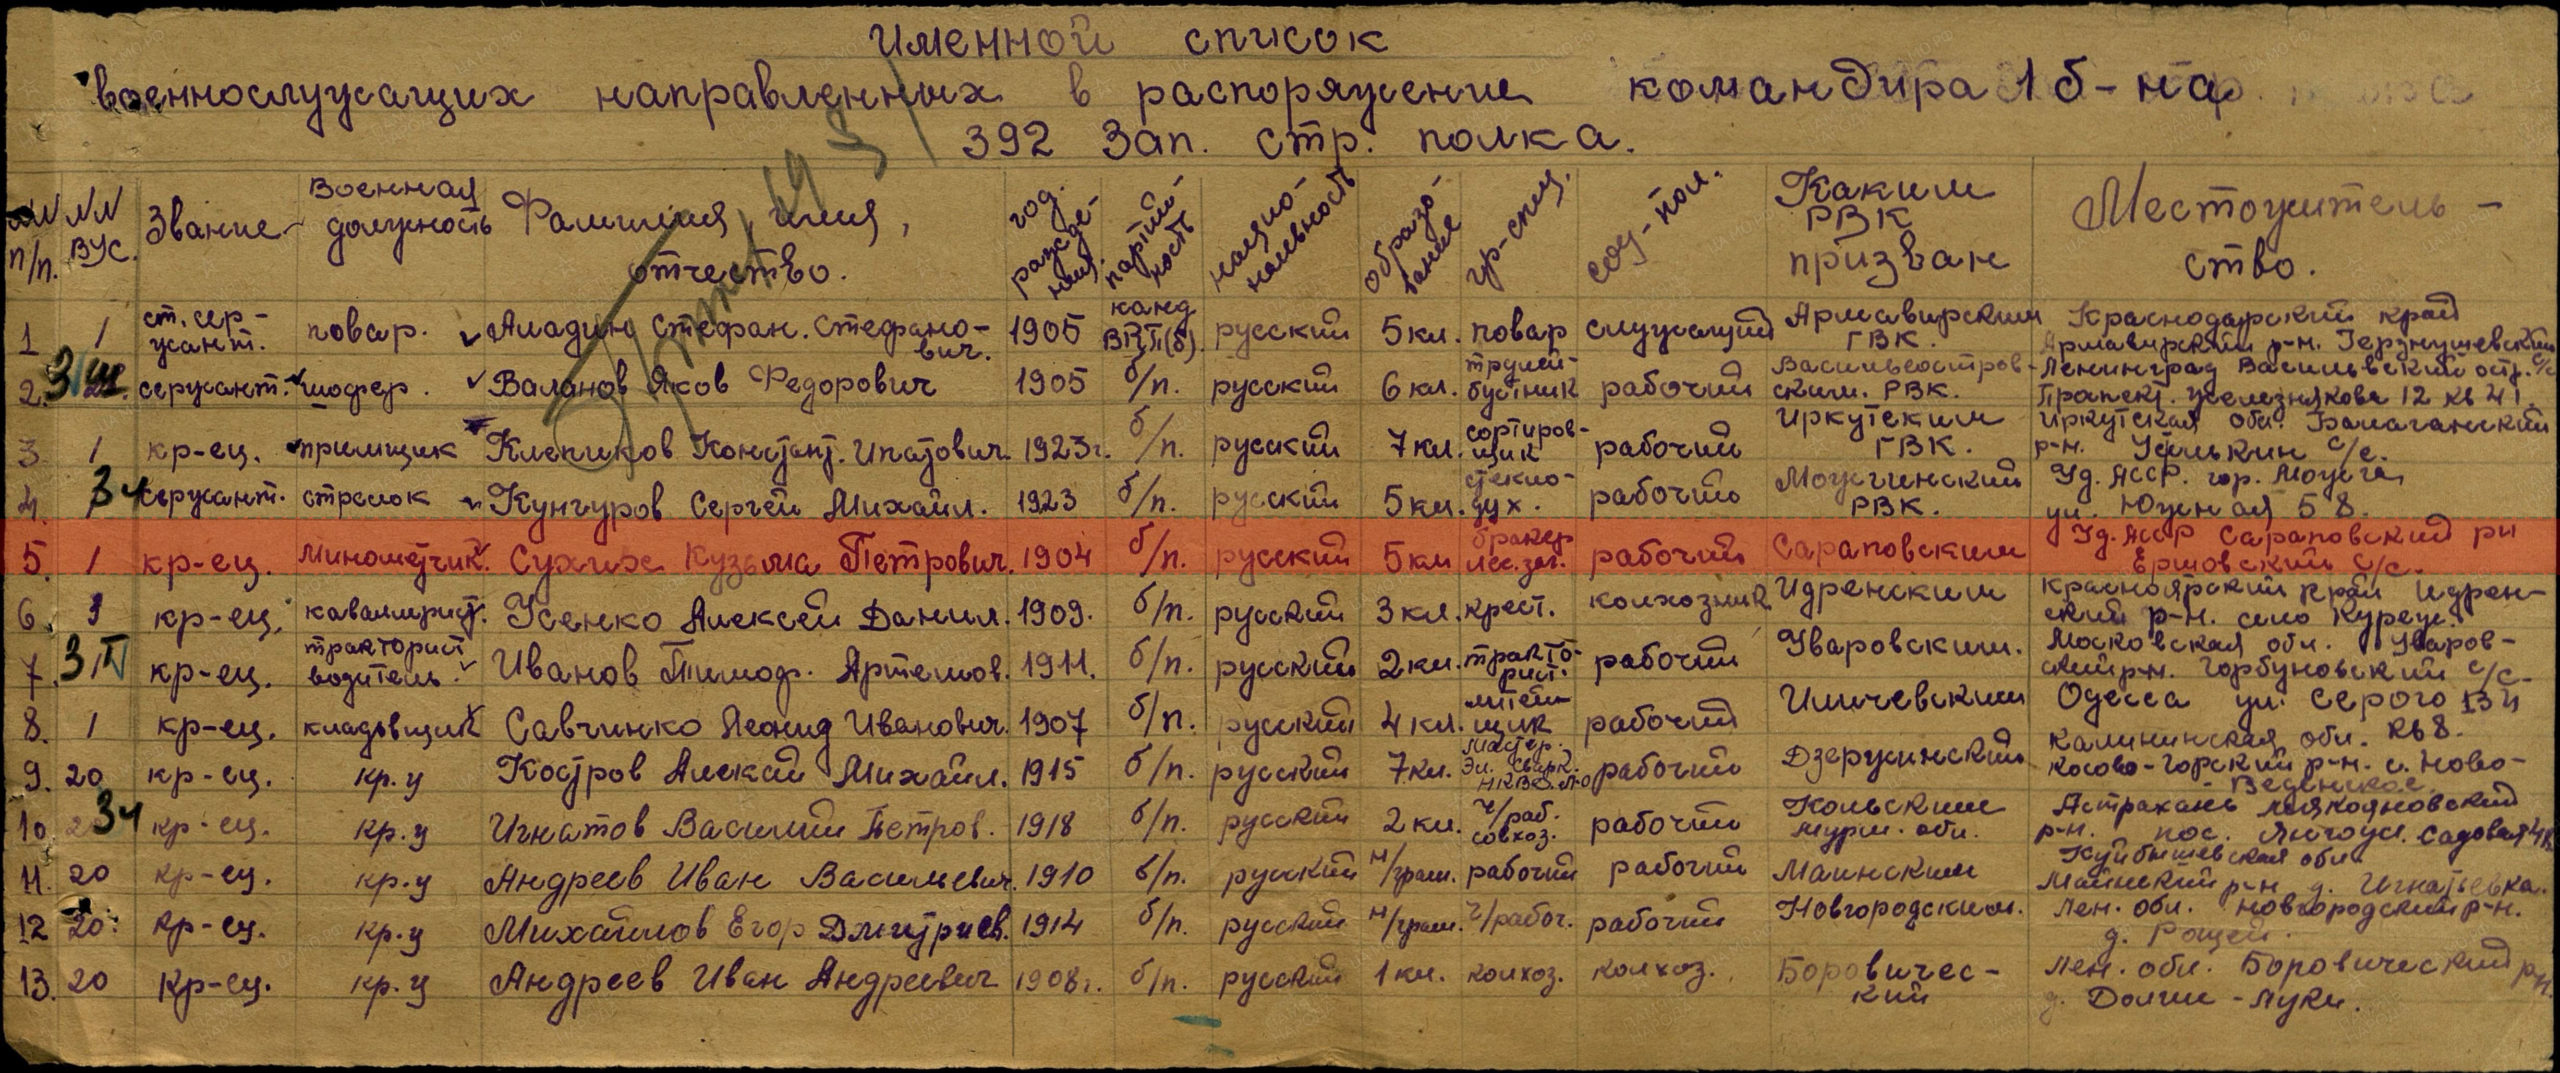 Информация из ВПП. Список команды, направленной в 392-й стрелковый полк, Волховский фронт